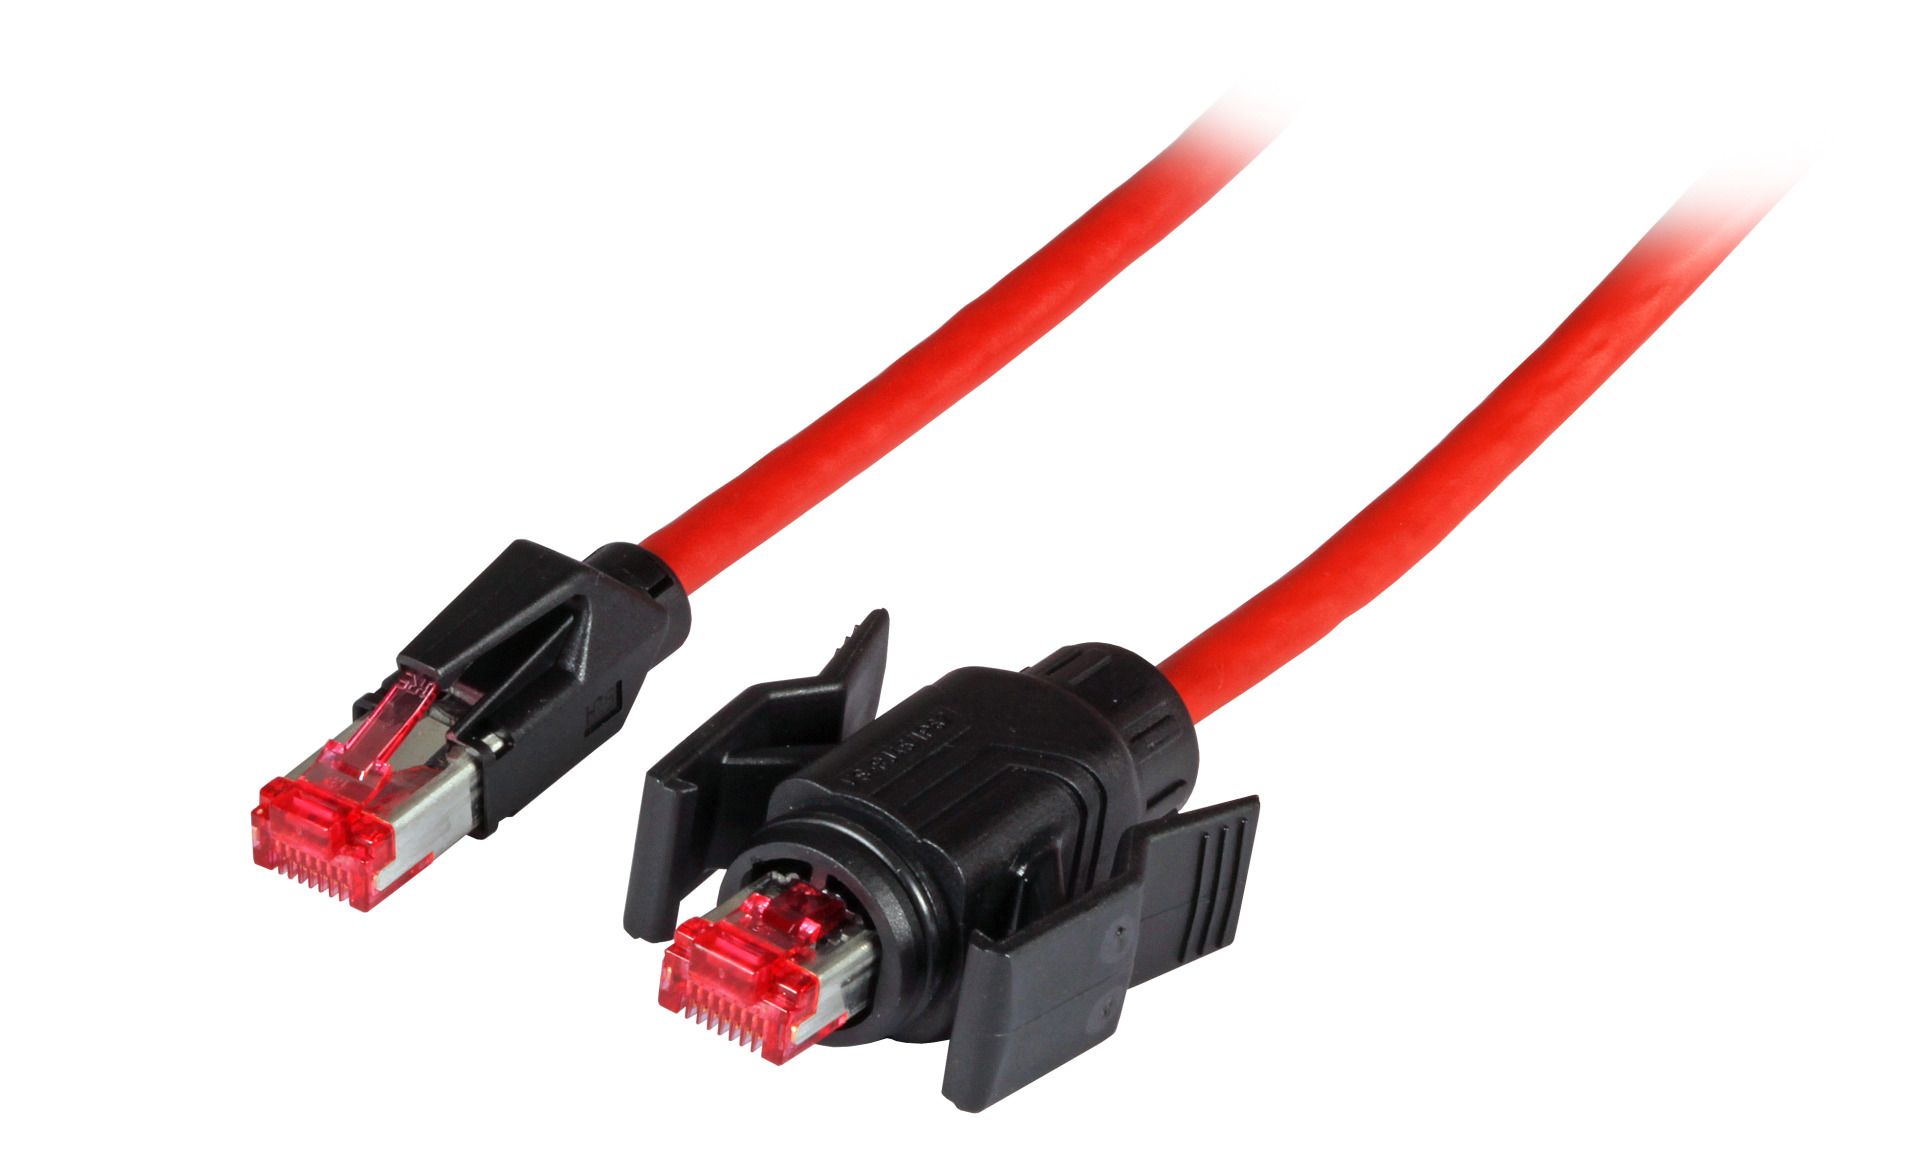 RJ45 Patch cable S/FTP, Cat.6A, IP67/TM21 / TM21, PUR, for 53730.1V2, 5m